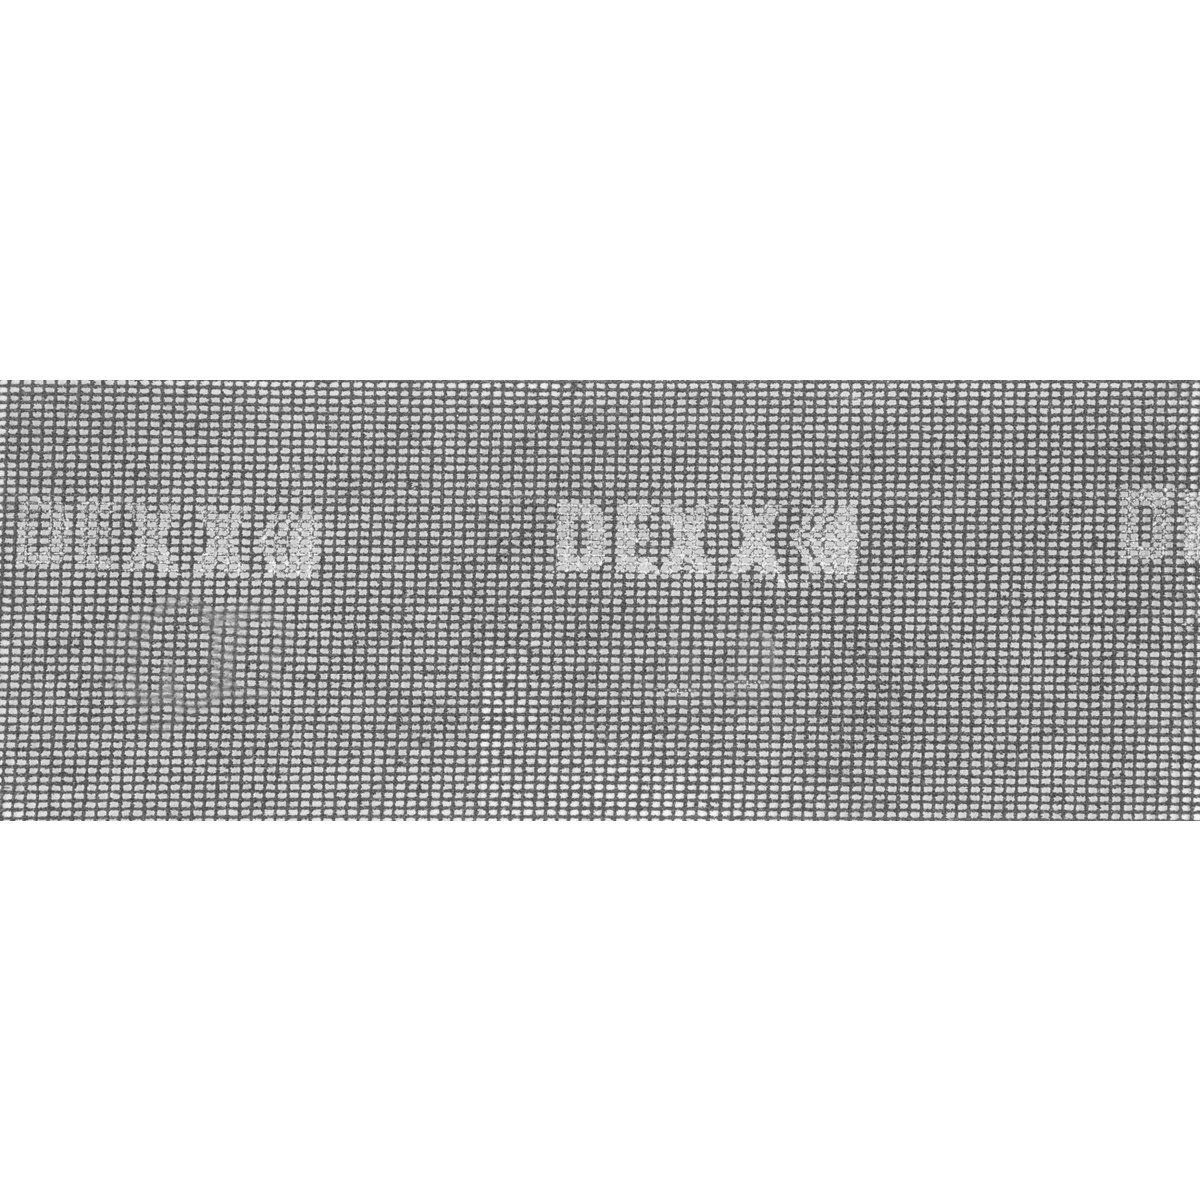 DEXX 105 х 280 мм, Р 120, 3 листа, шлифовальная сетка 35550-120_z01